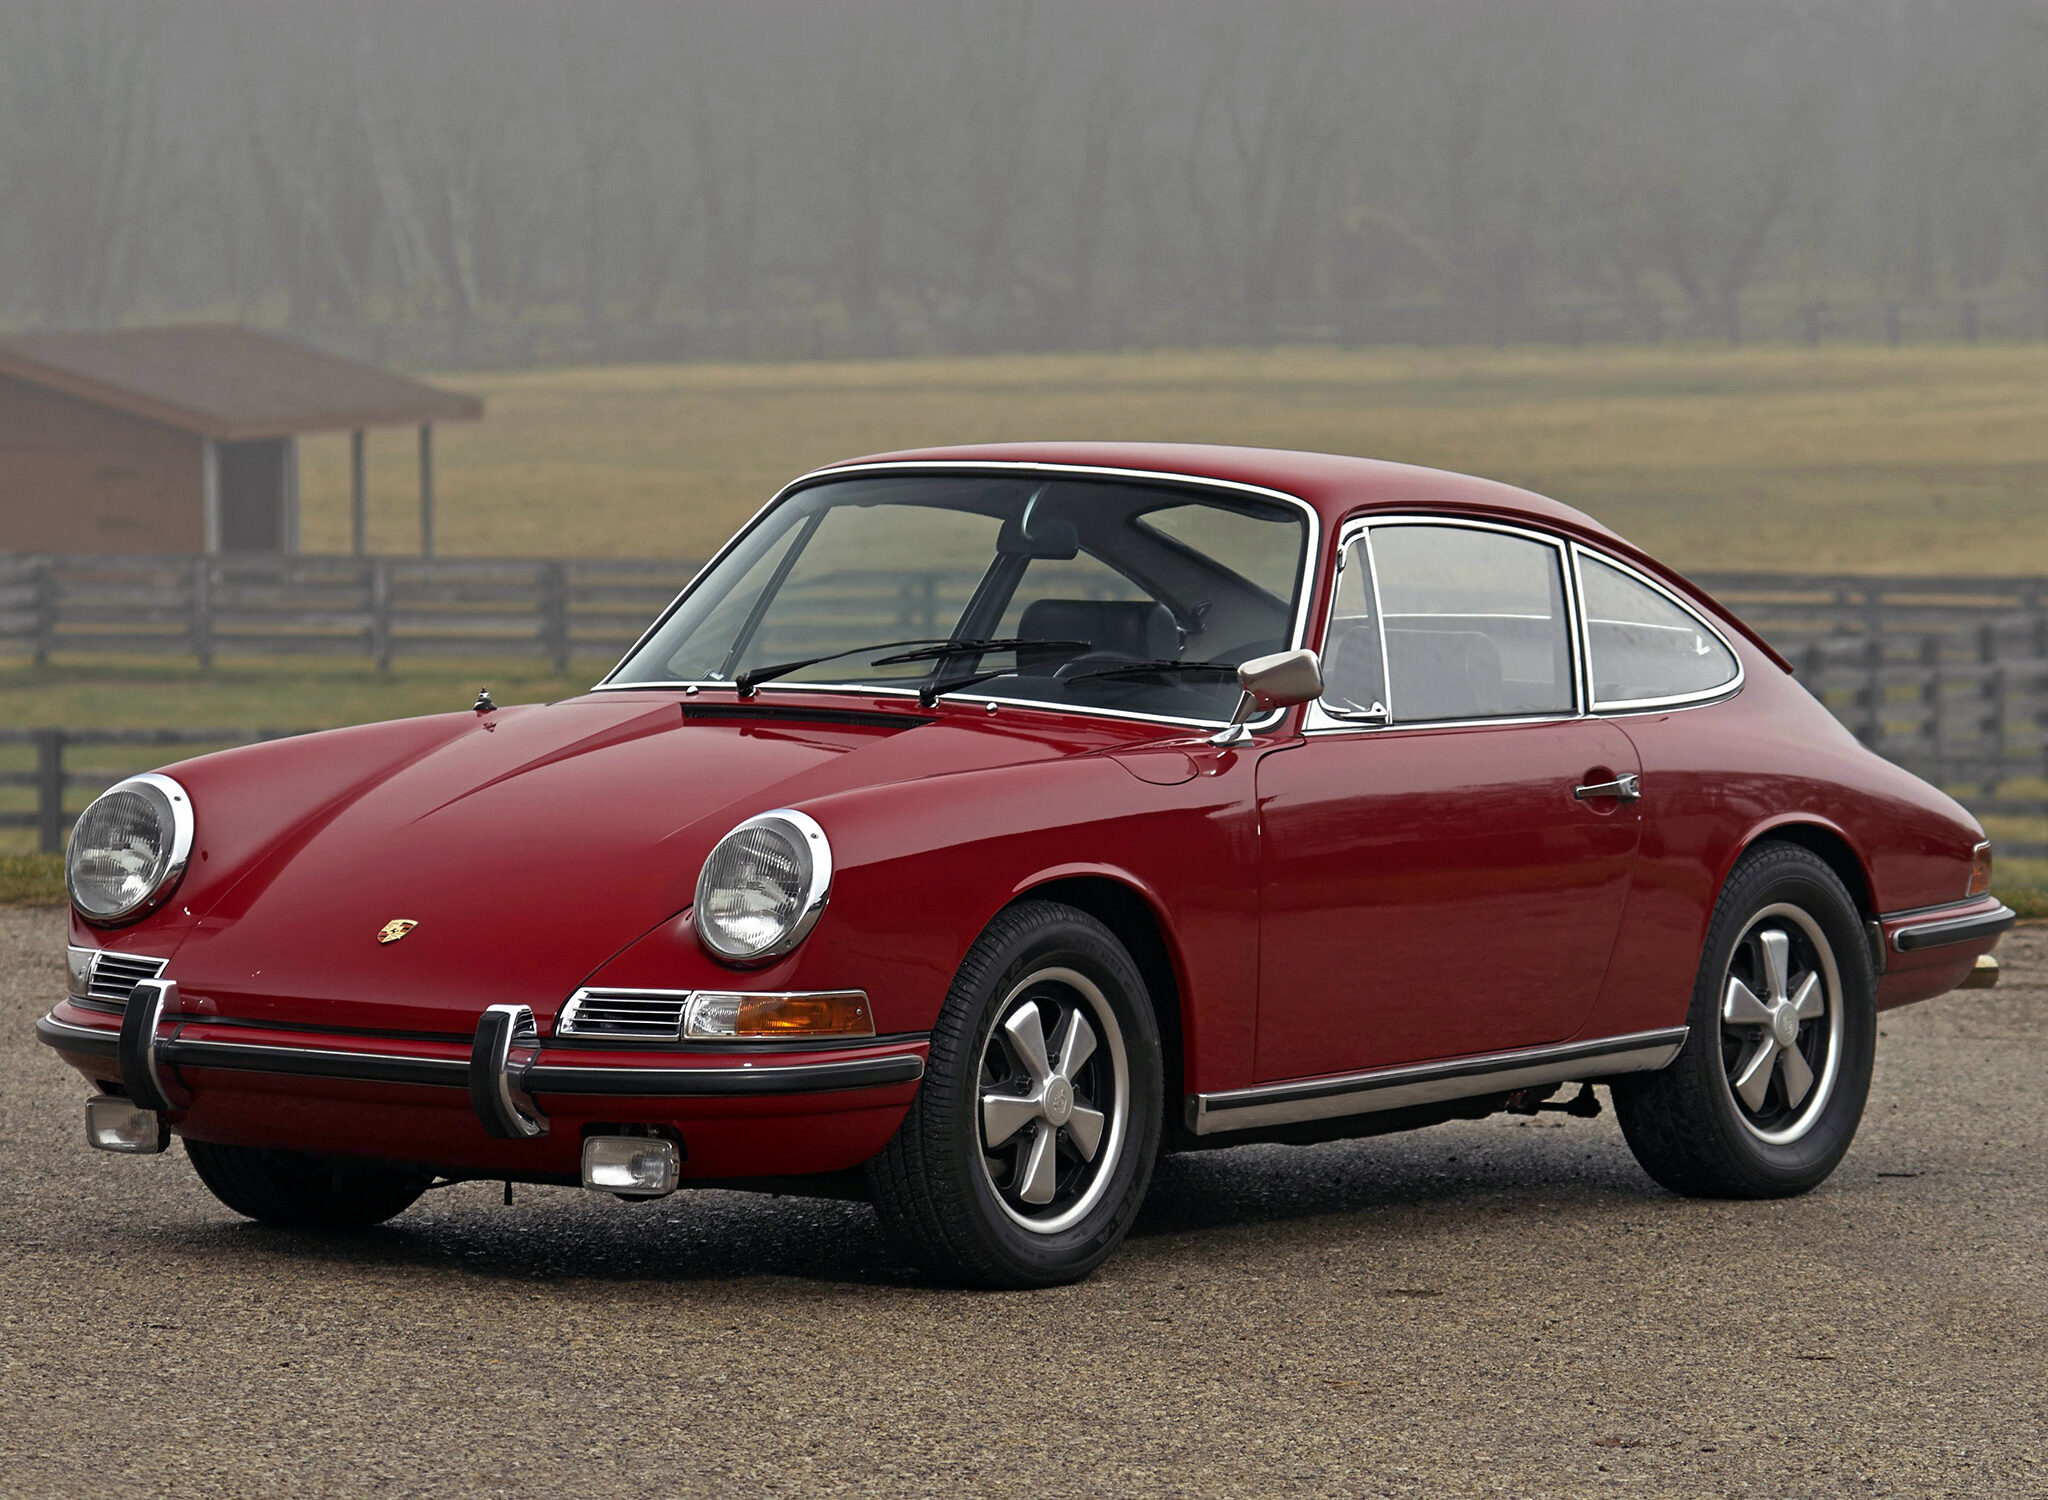 Porsche Of The Day: 1967 Porsche 911 S 2.0